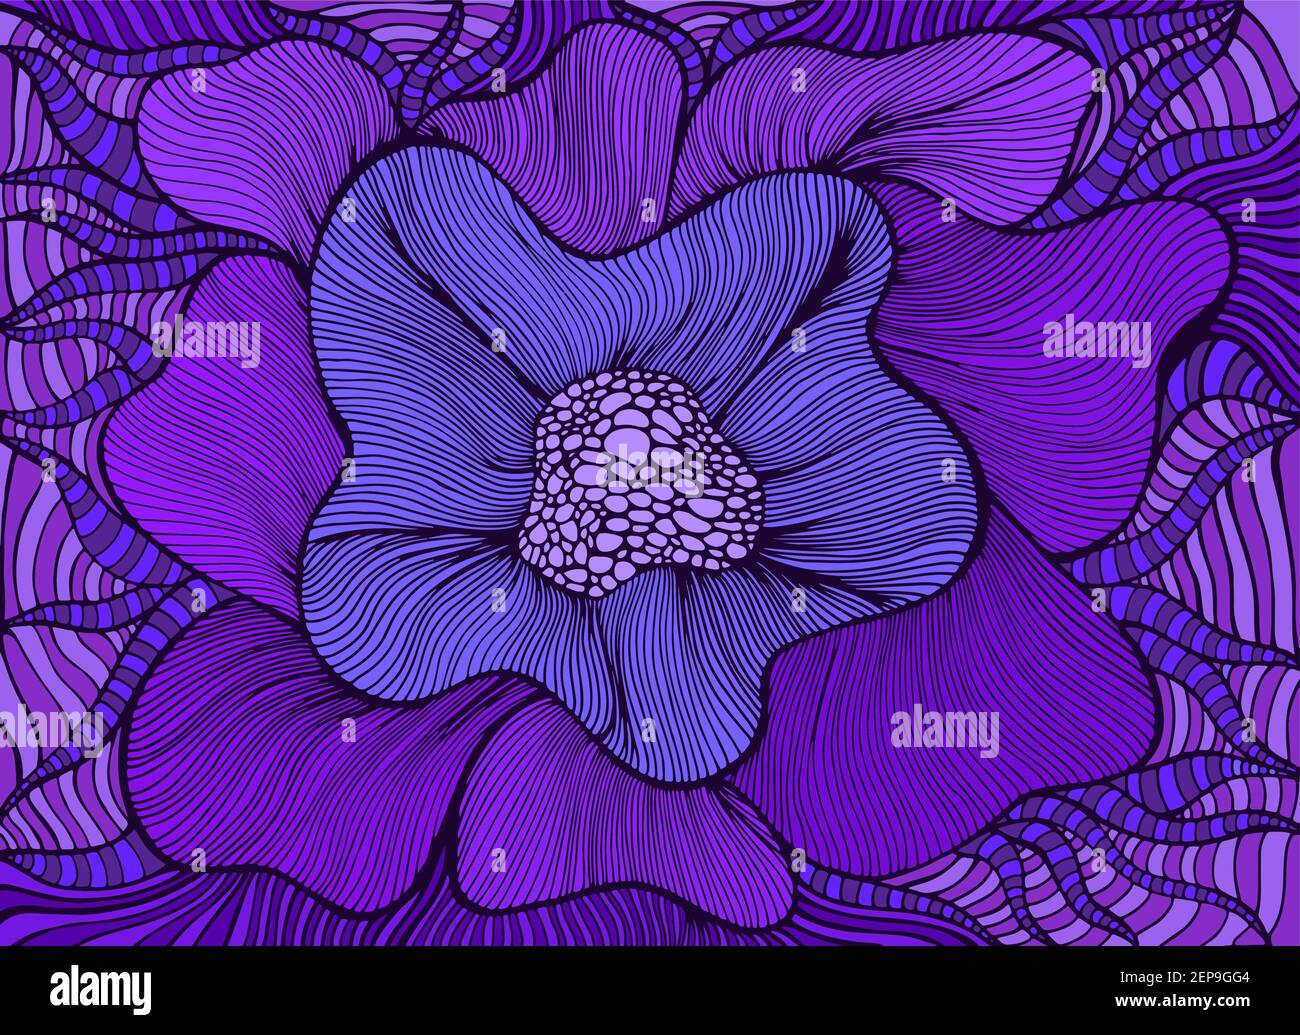 Incroyable fleur fantasy colorée en fleurs, violet nuances de couleur. Carte bohémienne élégante. Illustration vectorielle dessinée à la main avec des fleurs fantastiques. Doodle St Illustration de Vecteur